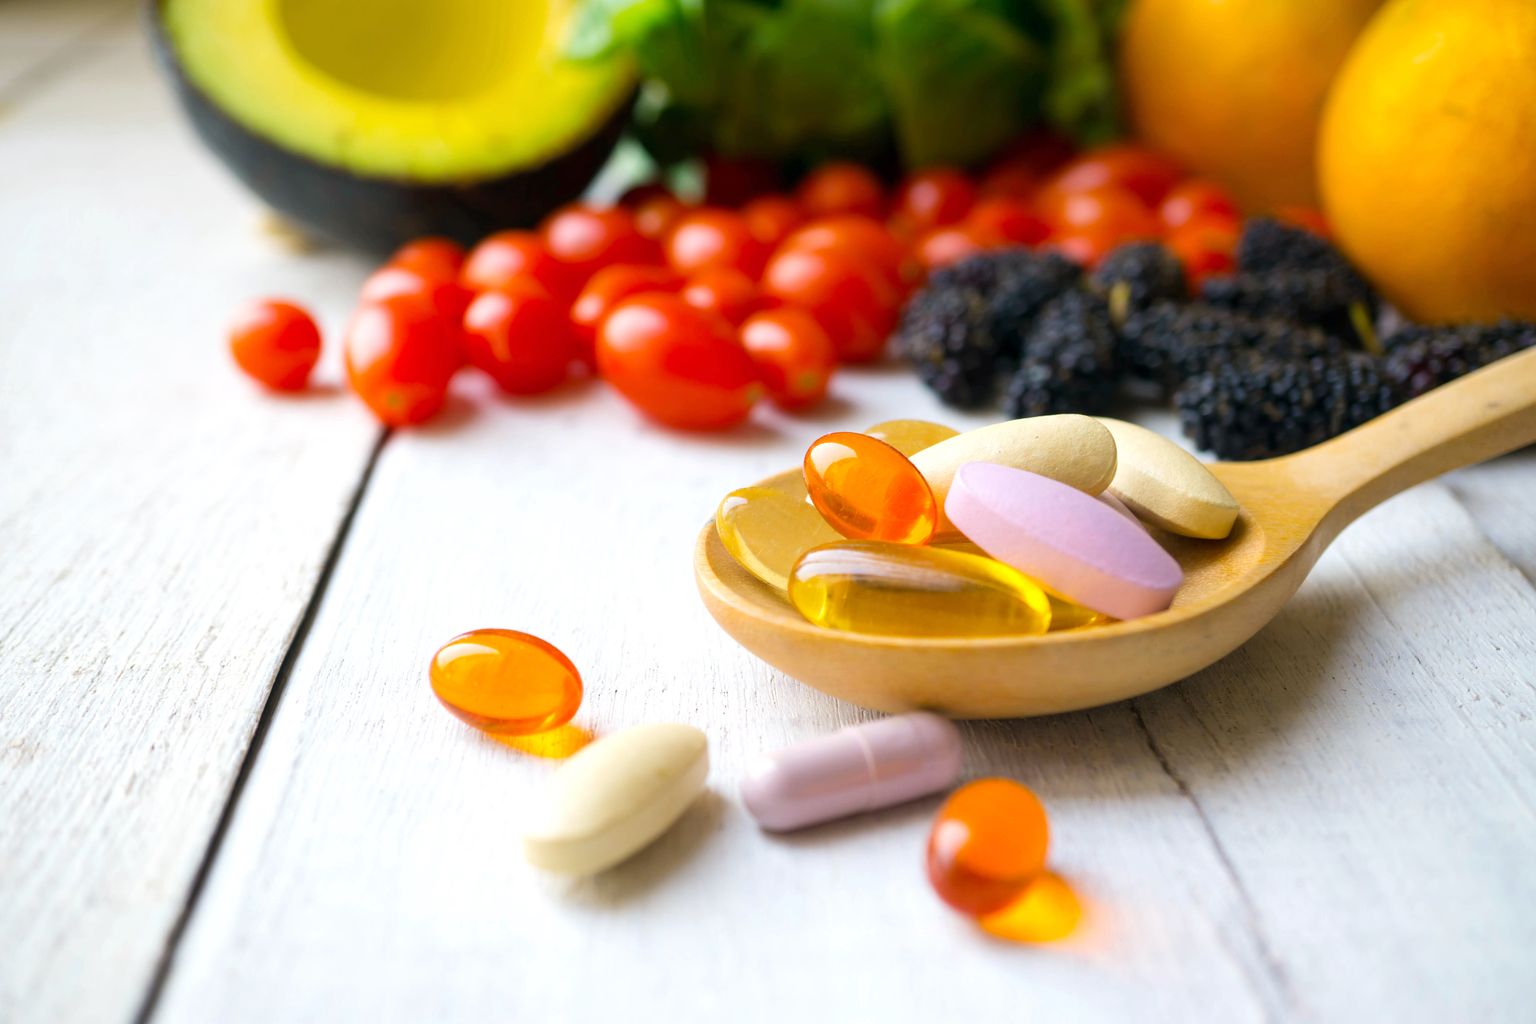 Pillole e capsule in cucchiaio di legno con frutta fresca.multivitamine e integratori dal concetto di frutta.